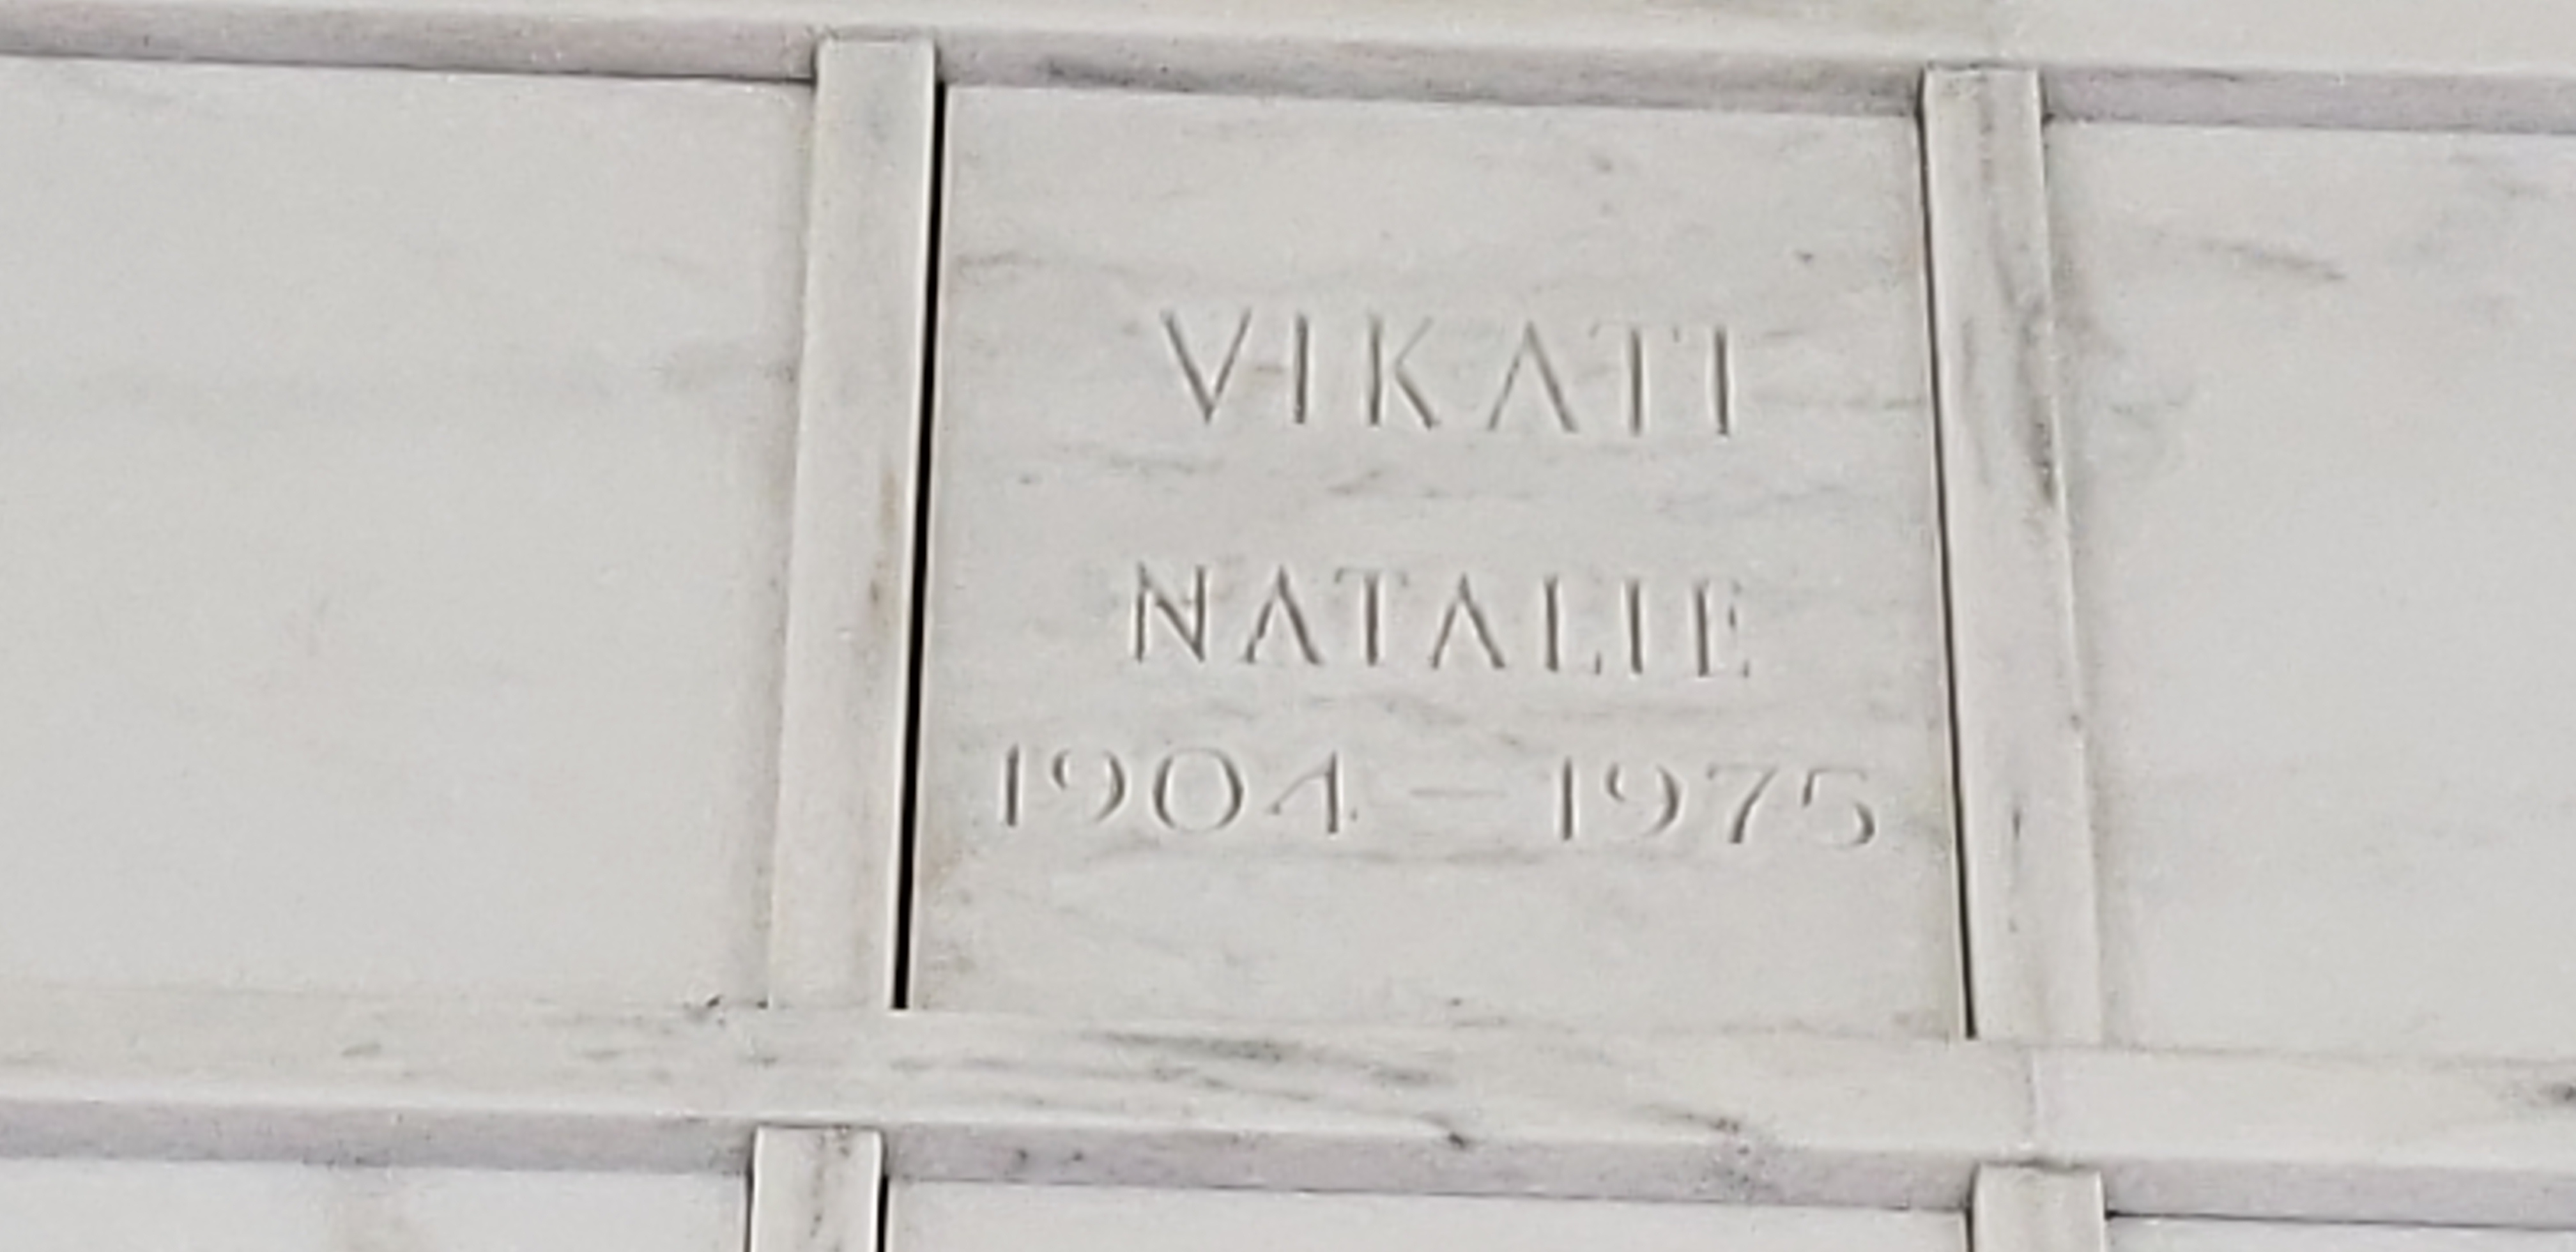 Natalie Vikati